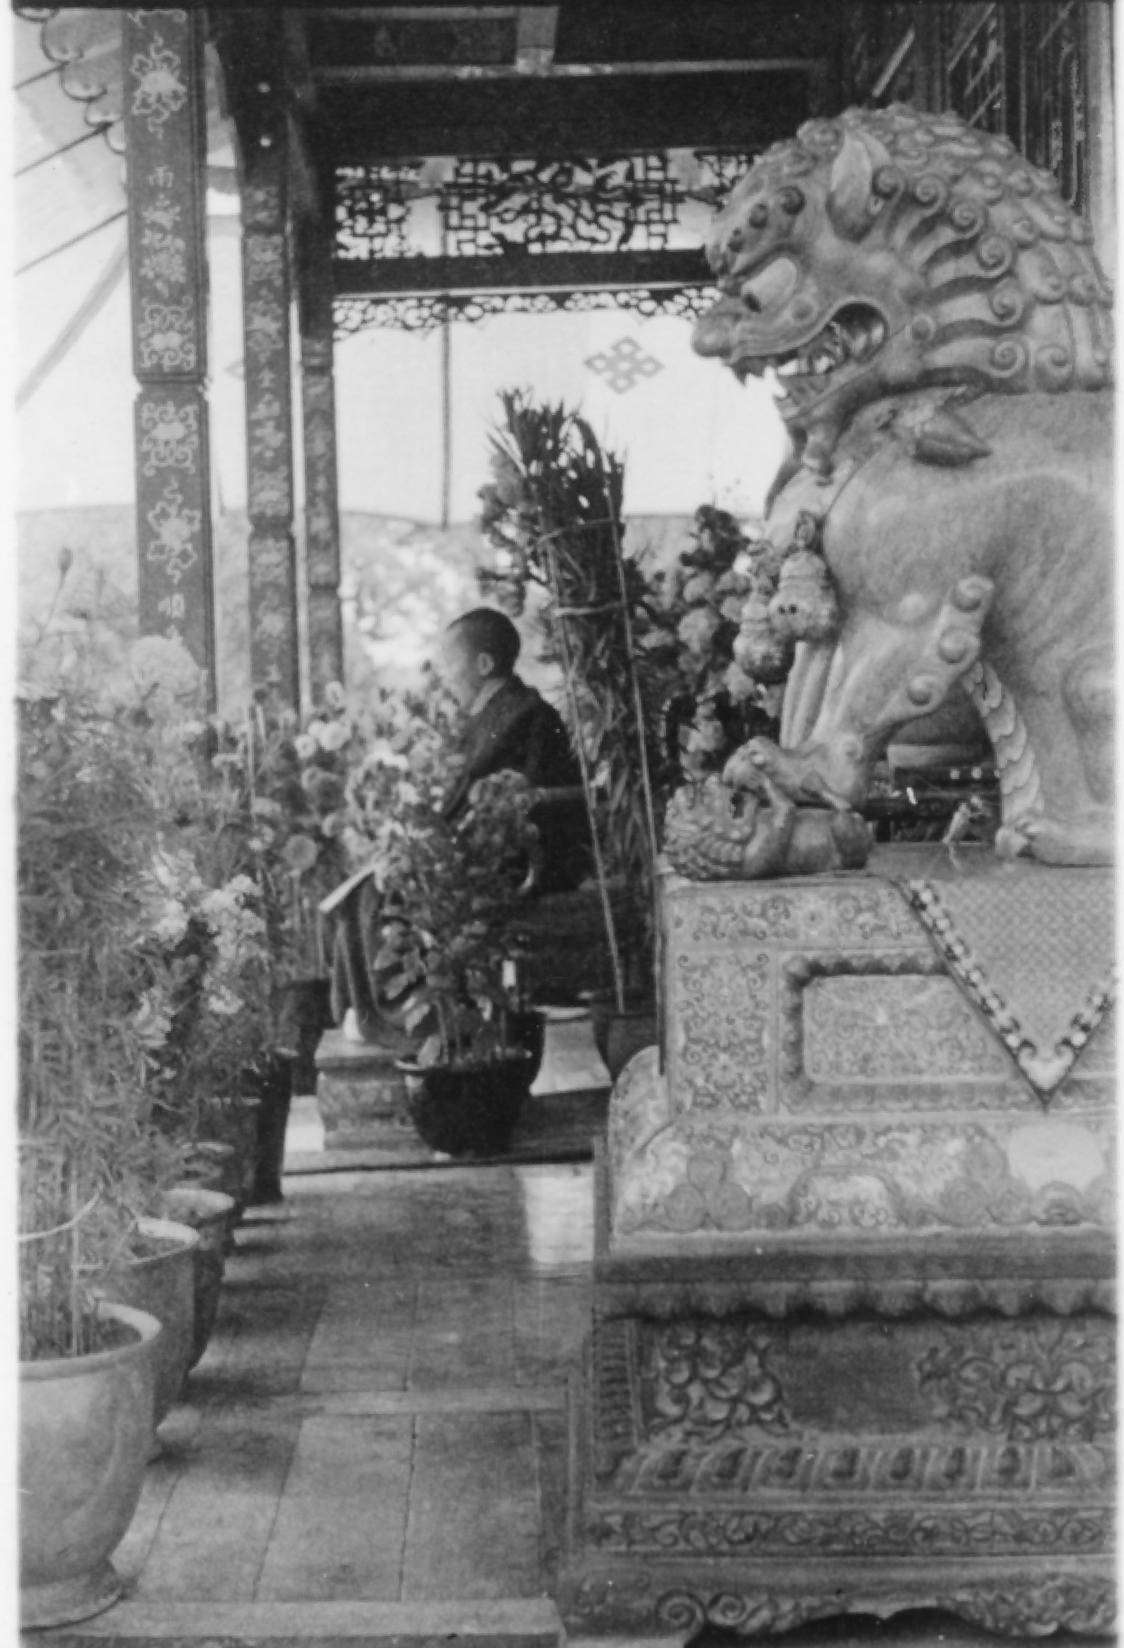 The Dalai Lama, 1944